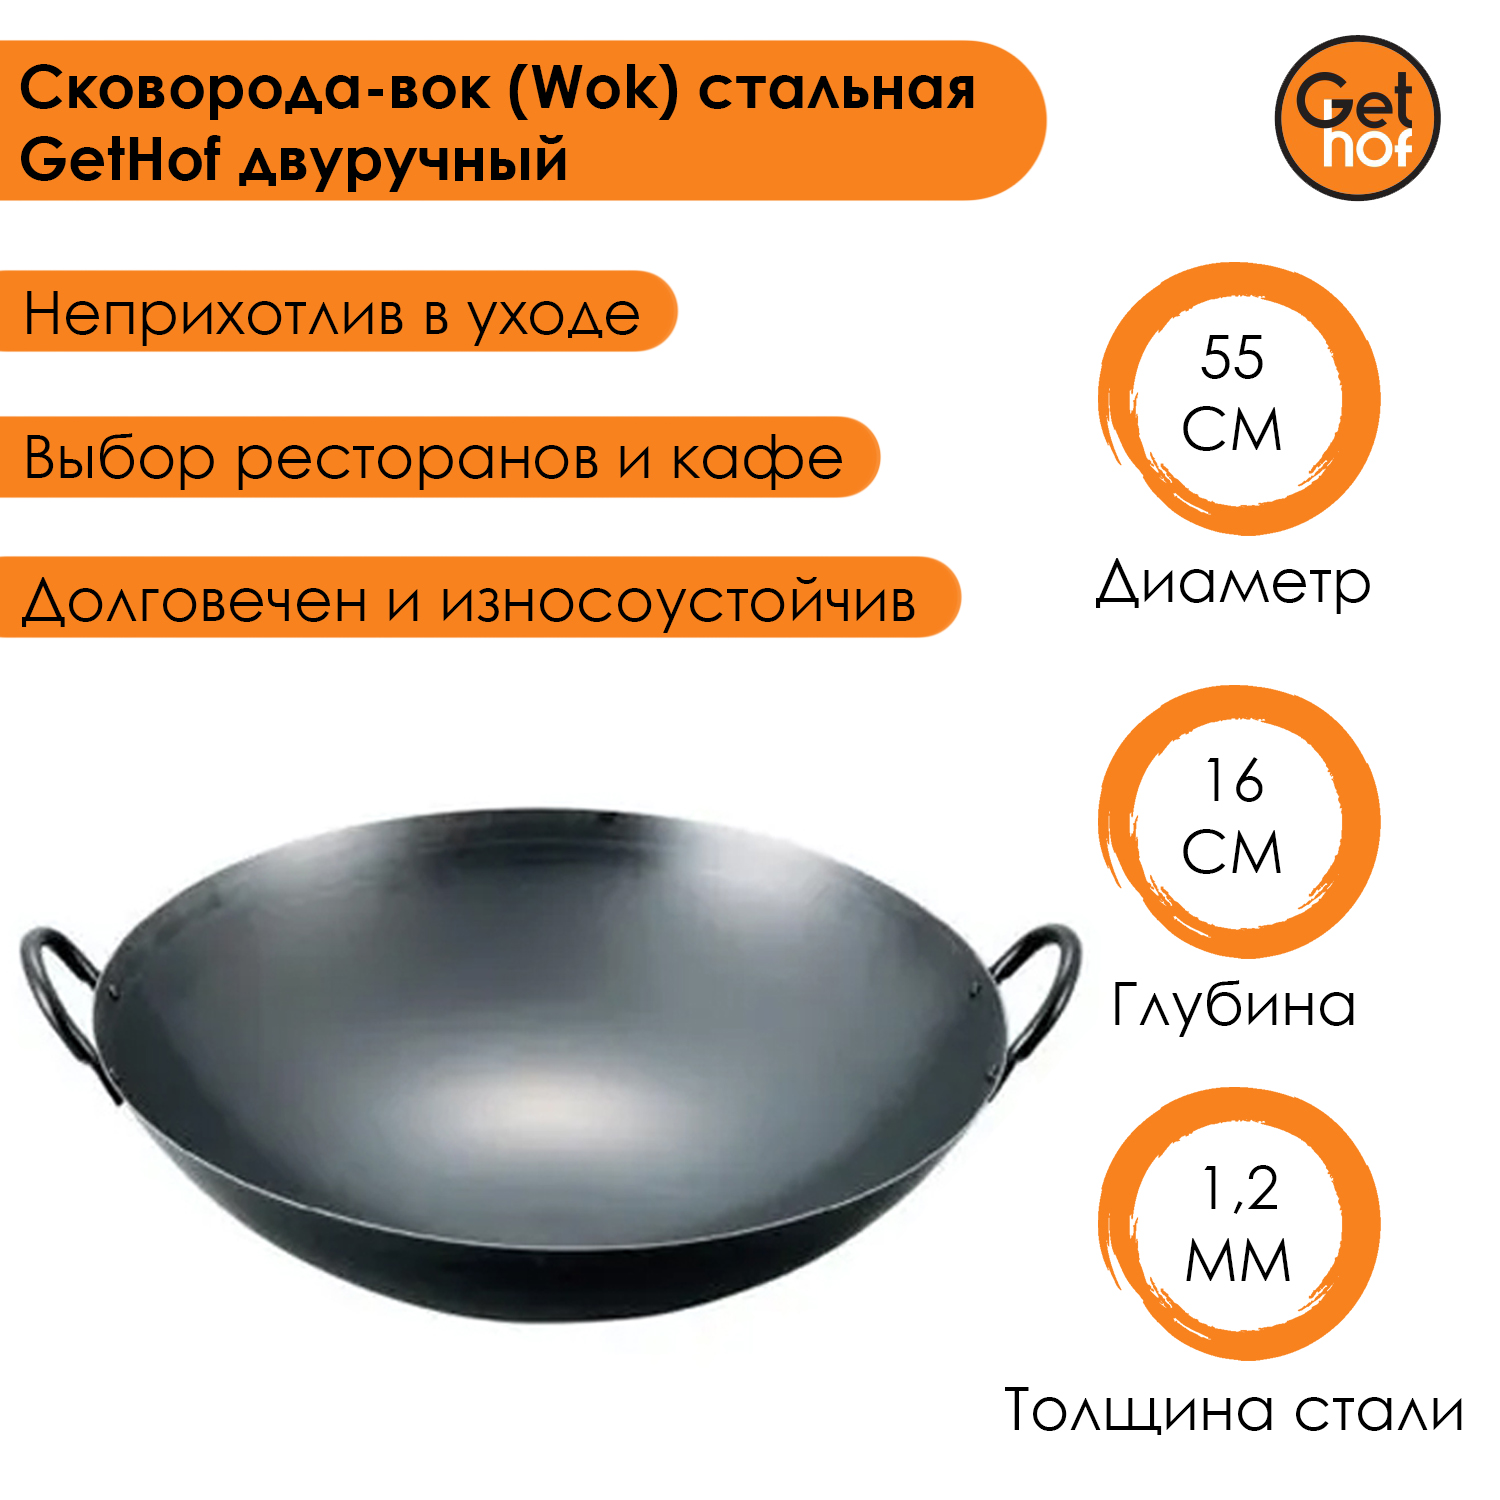 Сковорода-Вок (Wok) GetHof подготовленная с круглым дном 560-2R 56 см